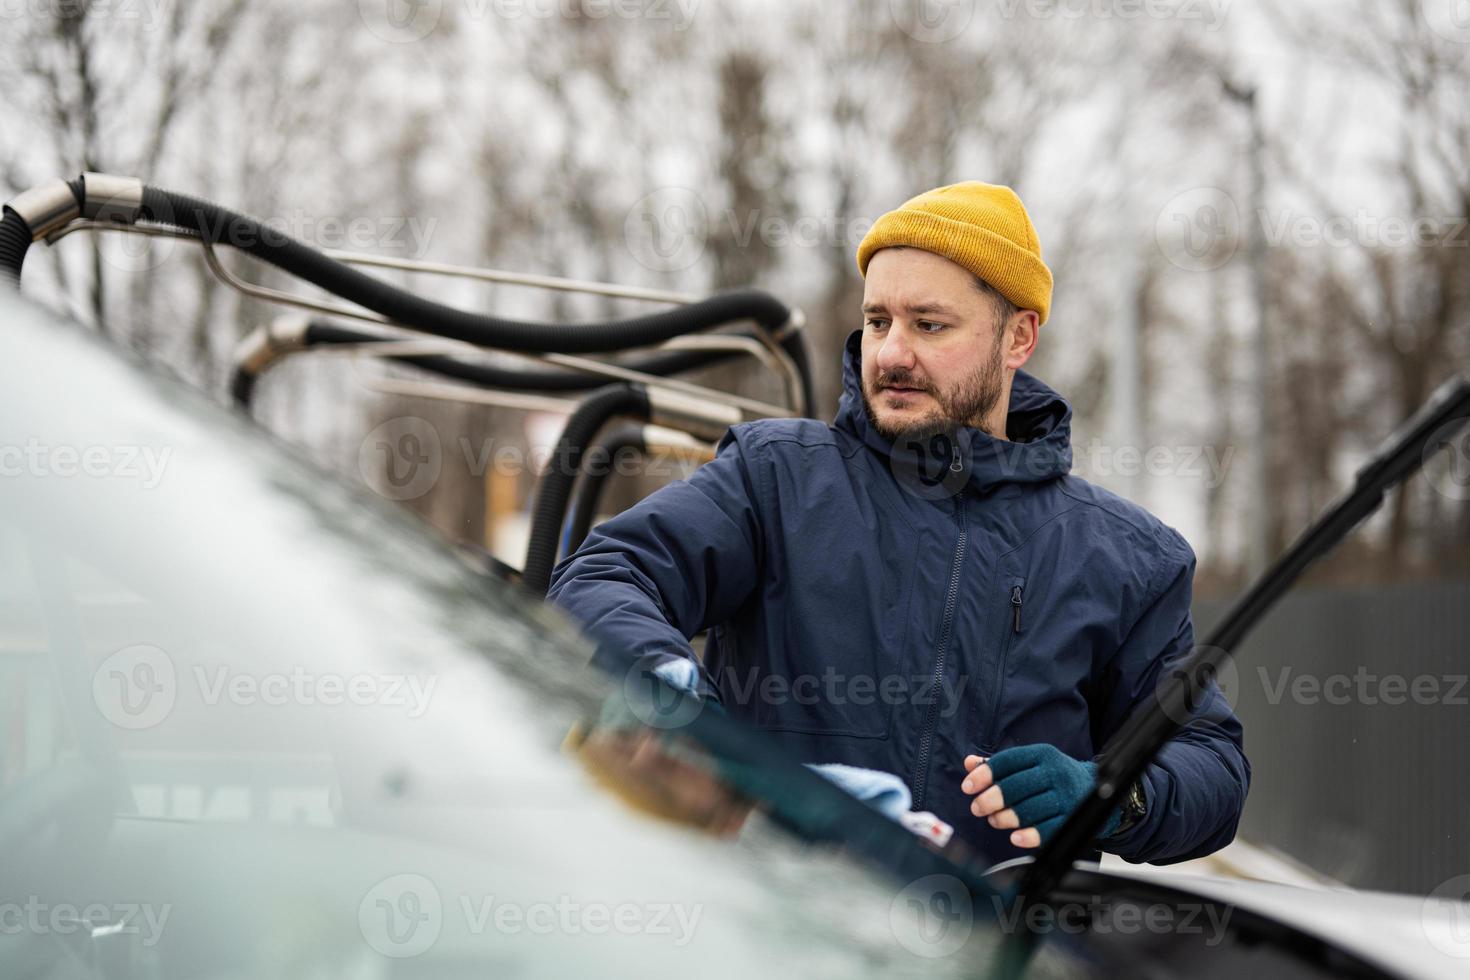 homem limpa o pára-brisa do carro suv americano com um pano de microfibra após a lavagem em clima frio. foto